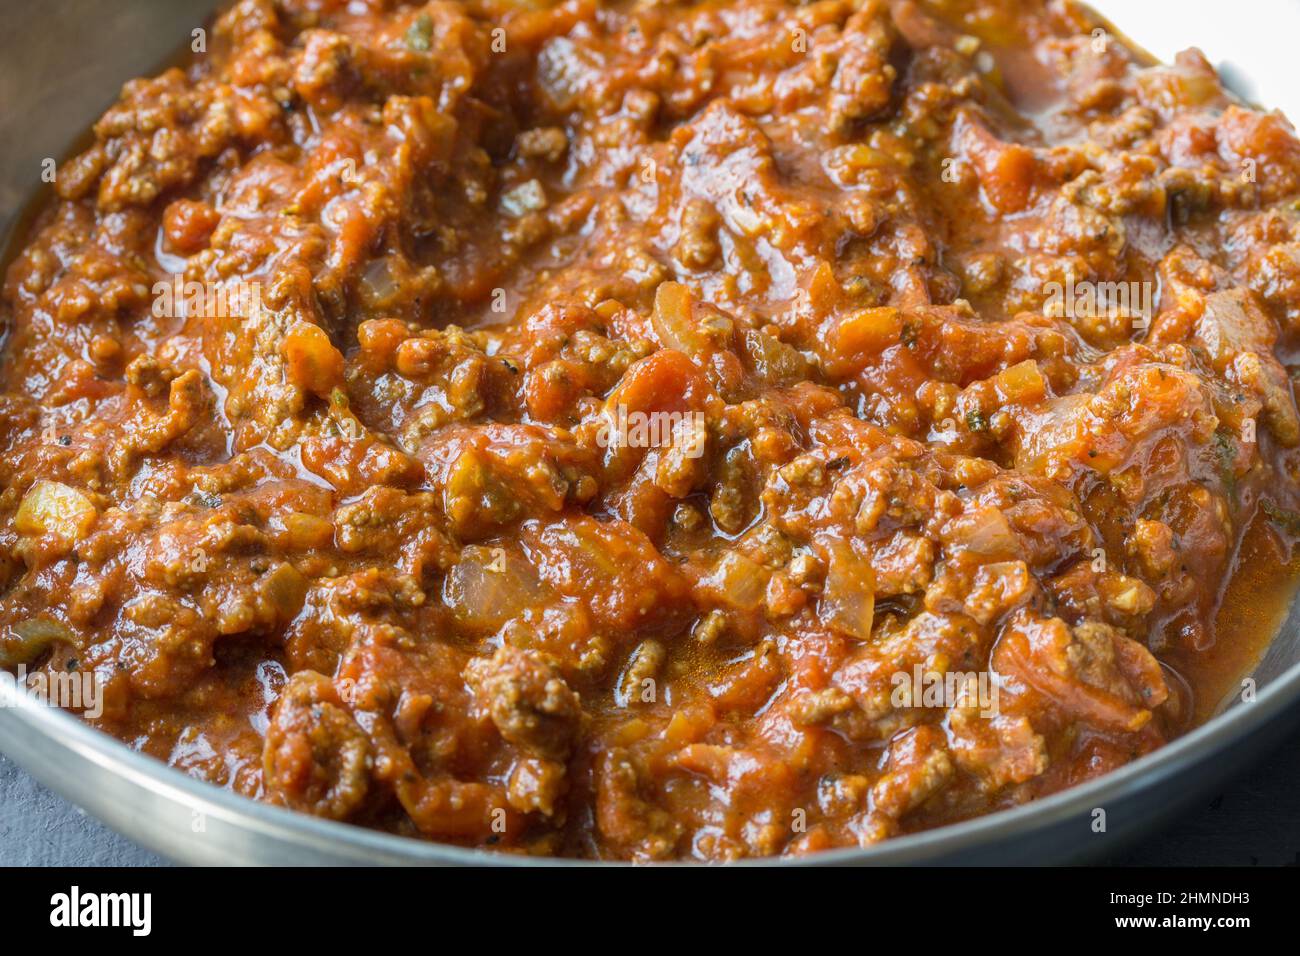 Food-Fotografie einer italienischen Bolognese-Fleisch-Pasta-Sauce in einer Edelstahlpfanne - Nahaufnahme Stockfoto